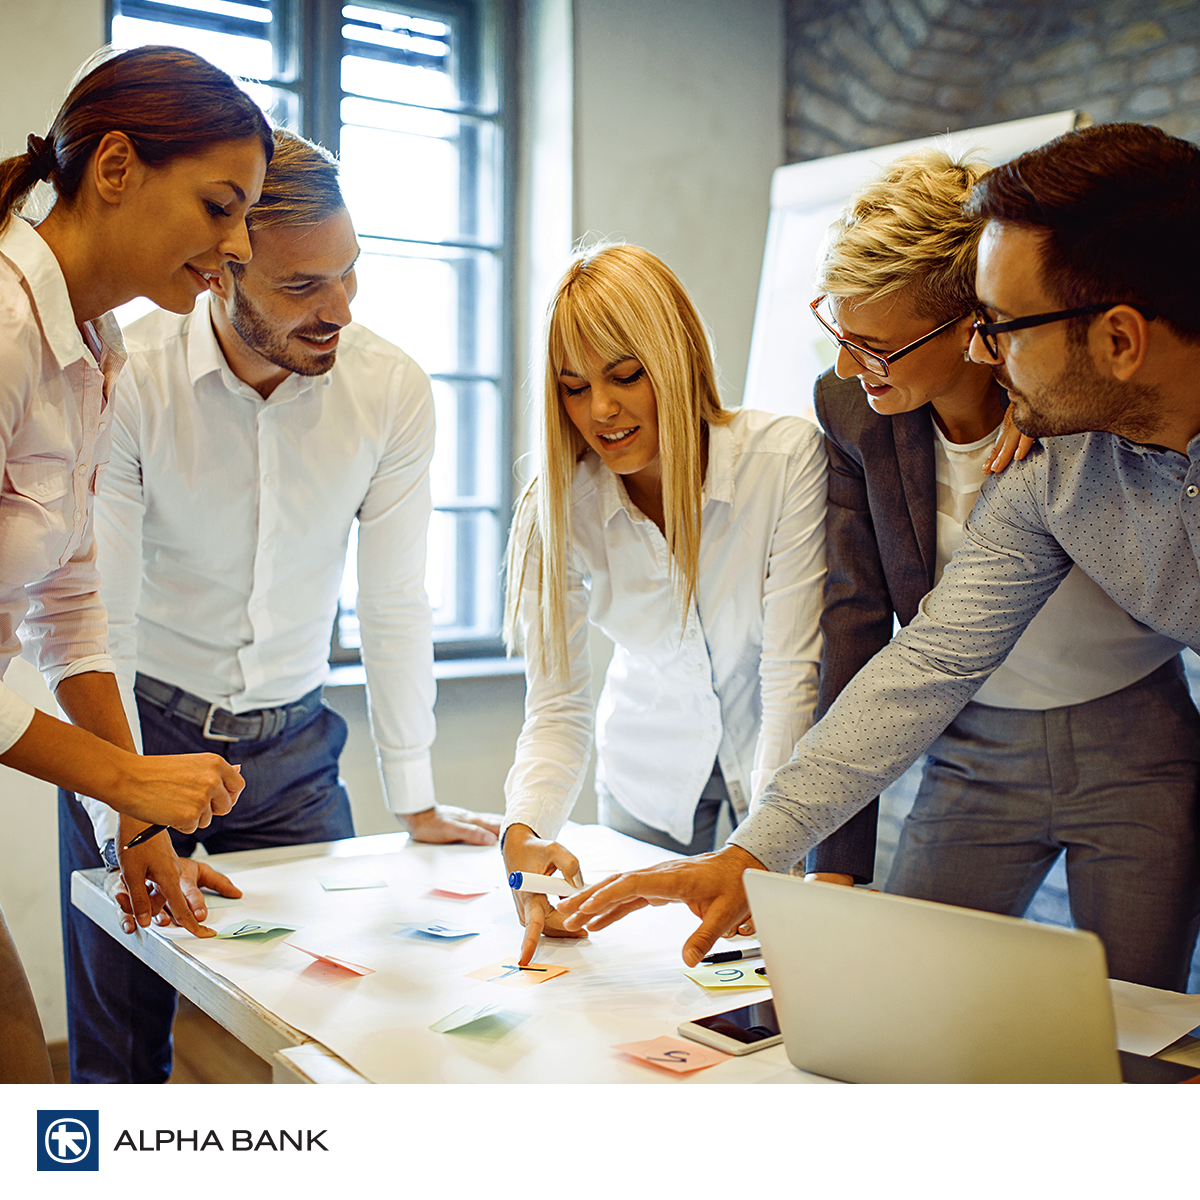 Alpha Bank România participă la programul Start-Up Nation, prin care antreprenorii pot obţine o finanţare nerambursabilă de maxim 200.000 lei pentru dezvoltarea afacerii 